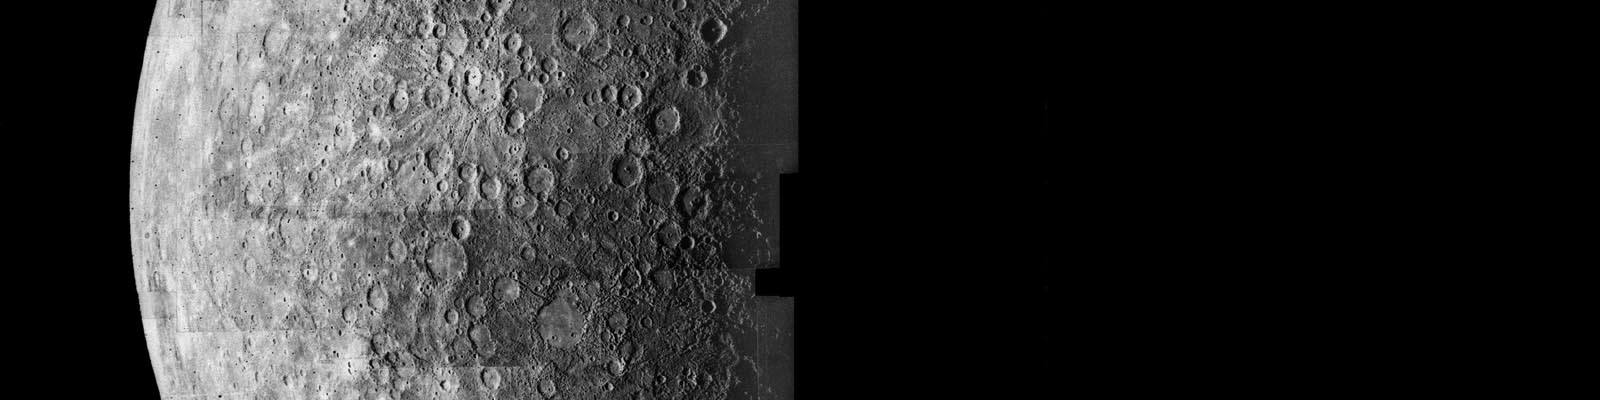 La planète Mercure vue par la sonde Mariner 10